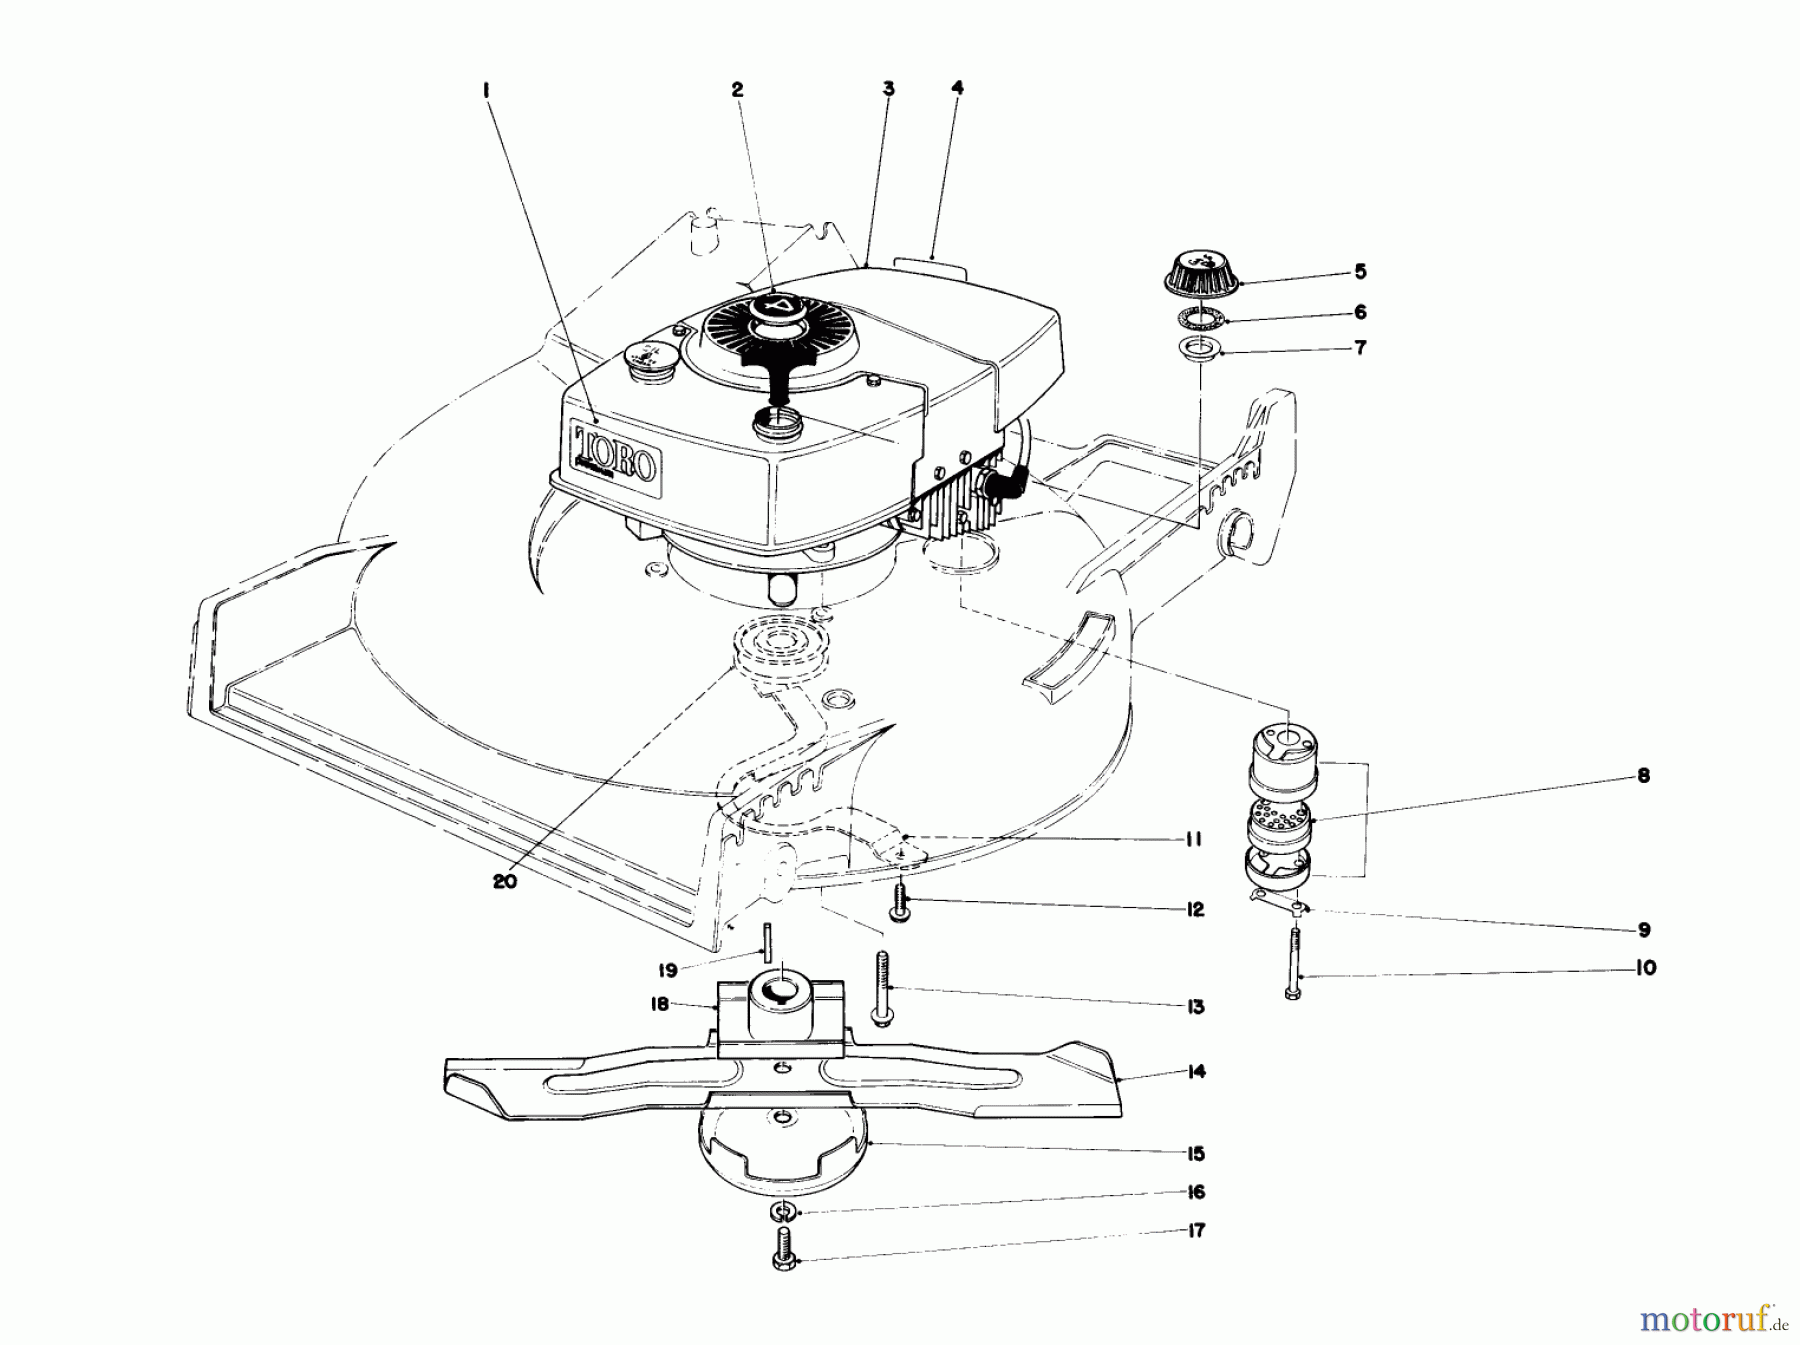  Toro Neu Mowers, Walk-Behind Seite 1 20775 - Toro Lawnmower, 1980 (0000001-0999999) ENGINE ASSEMBLY